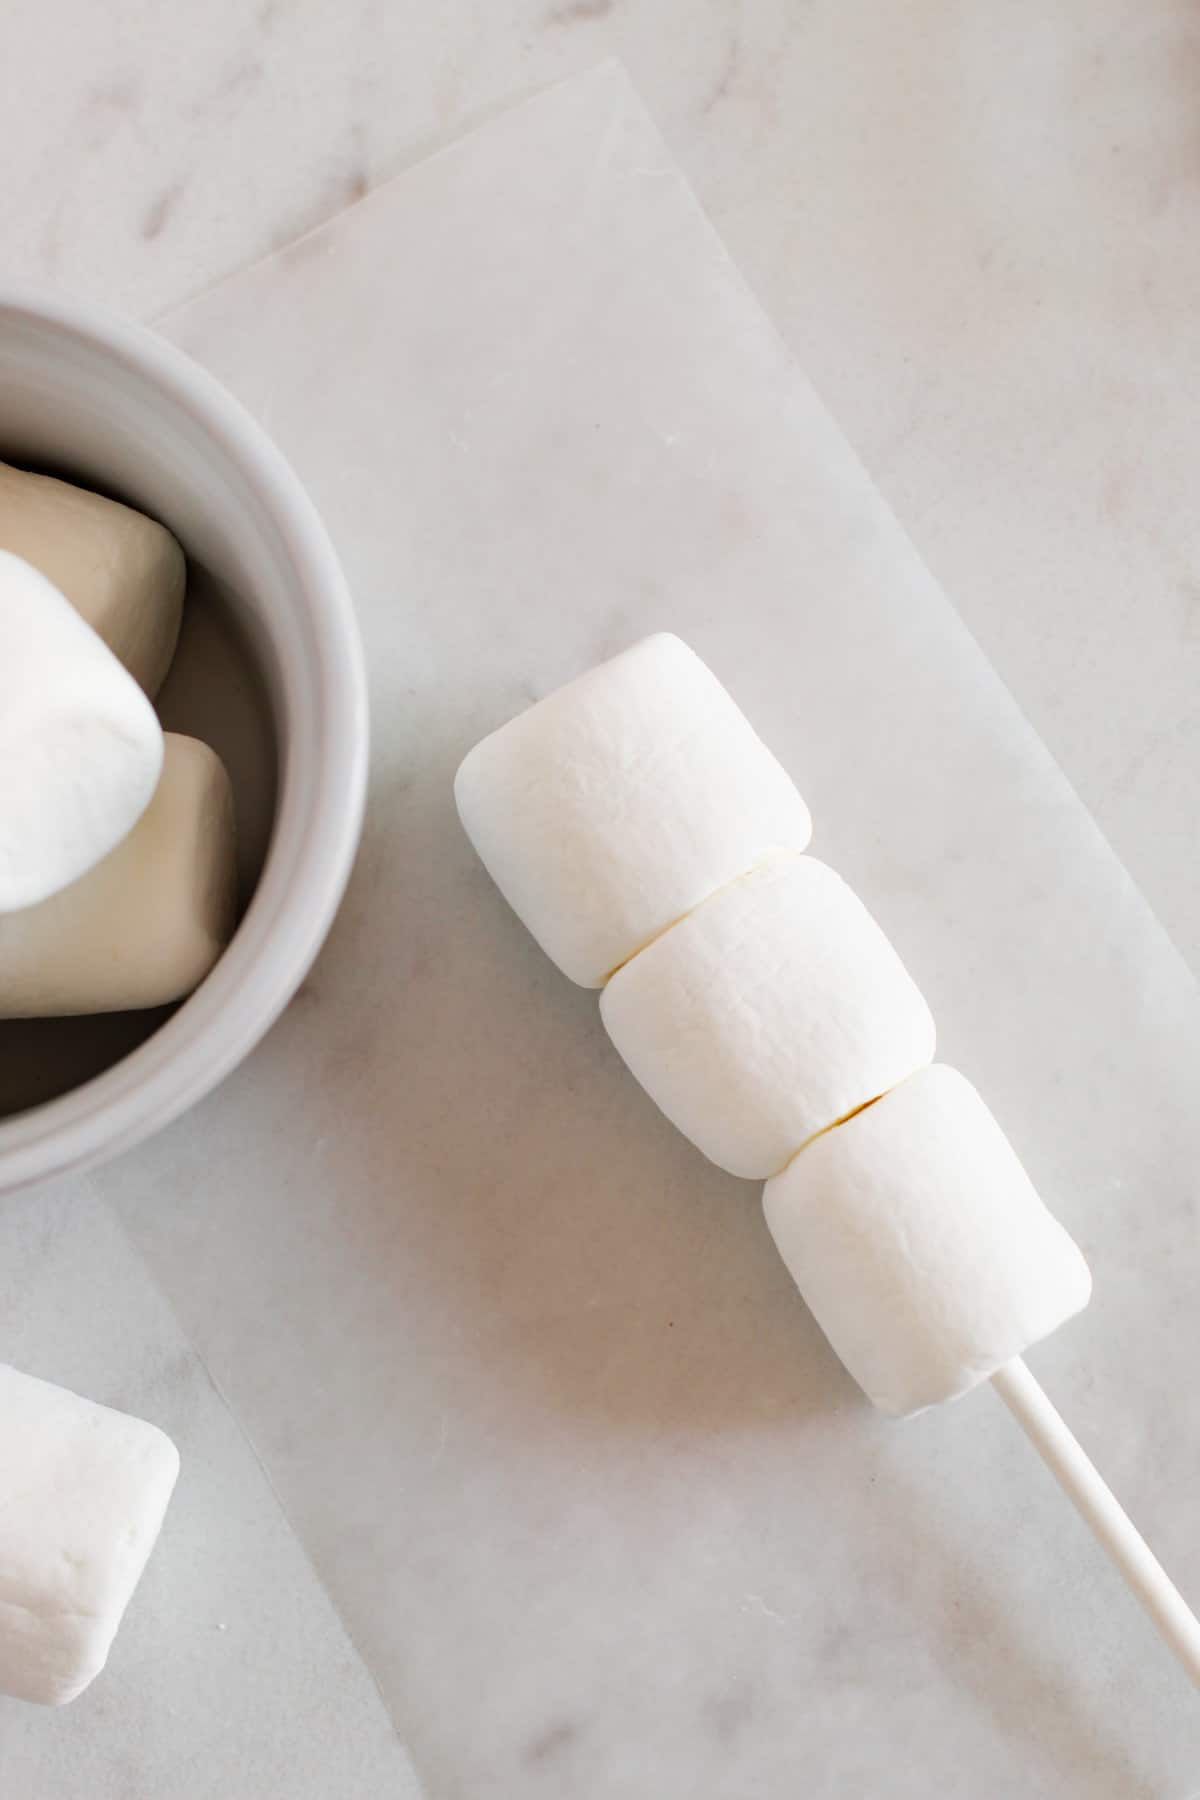 Three white marshmallows on end of white treat stick.